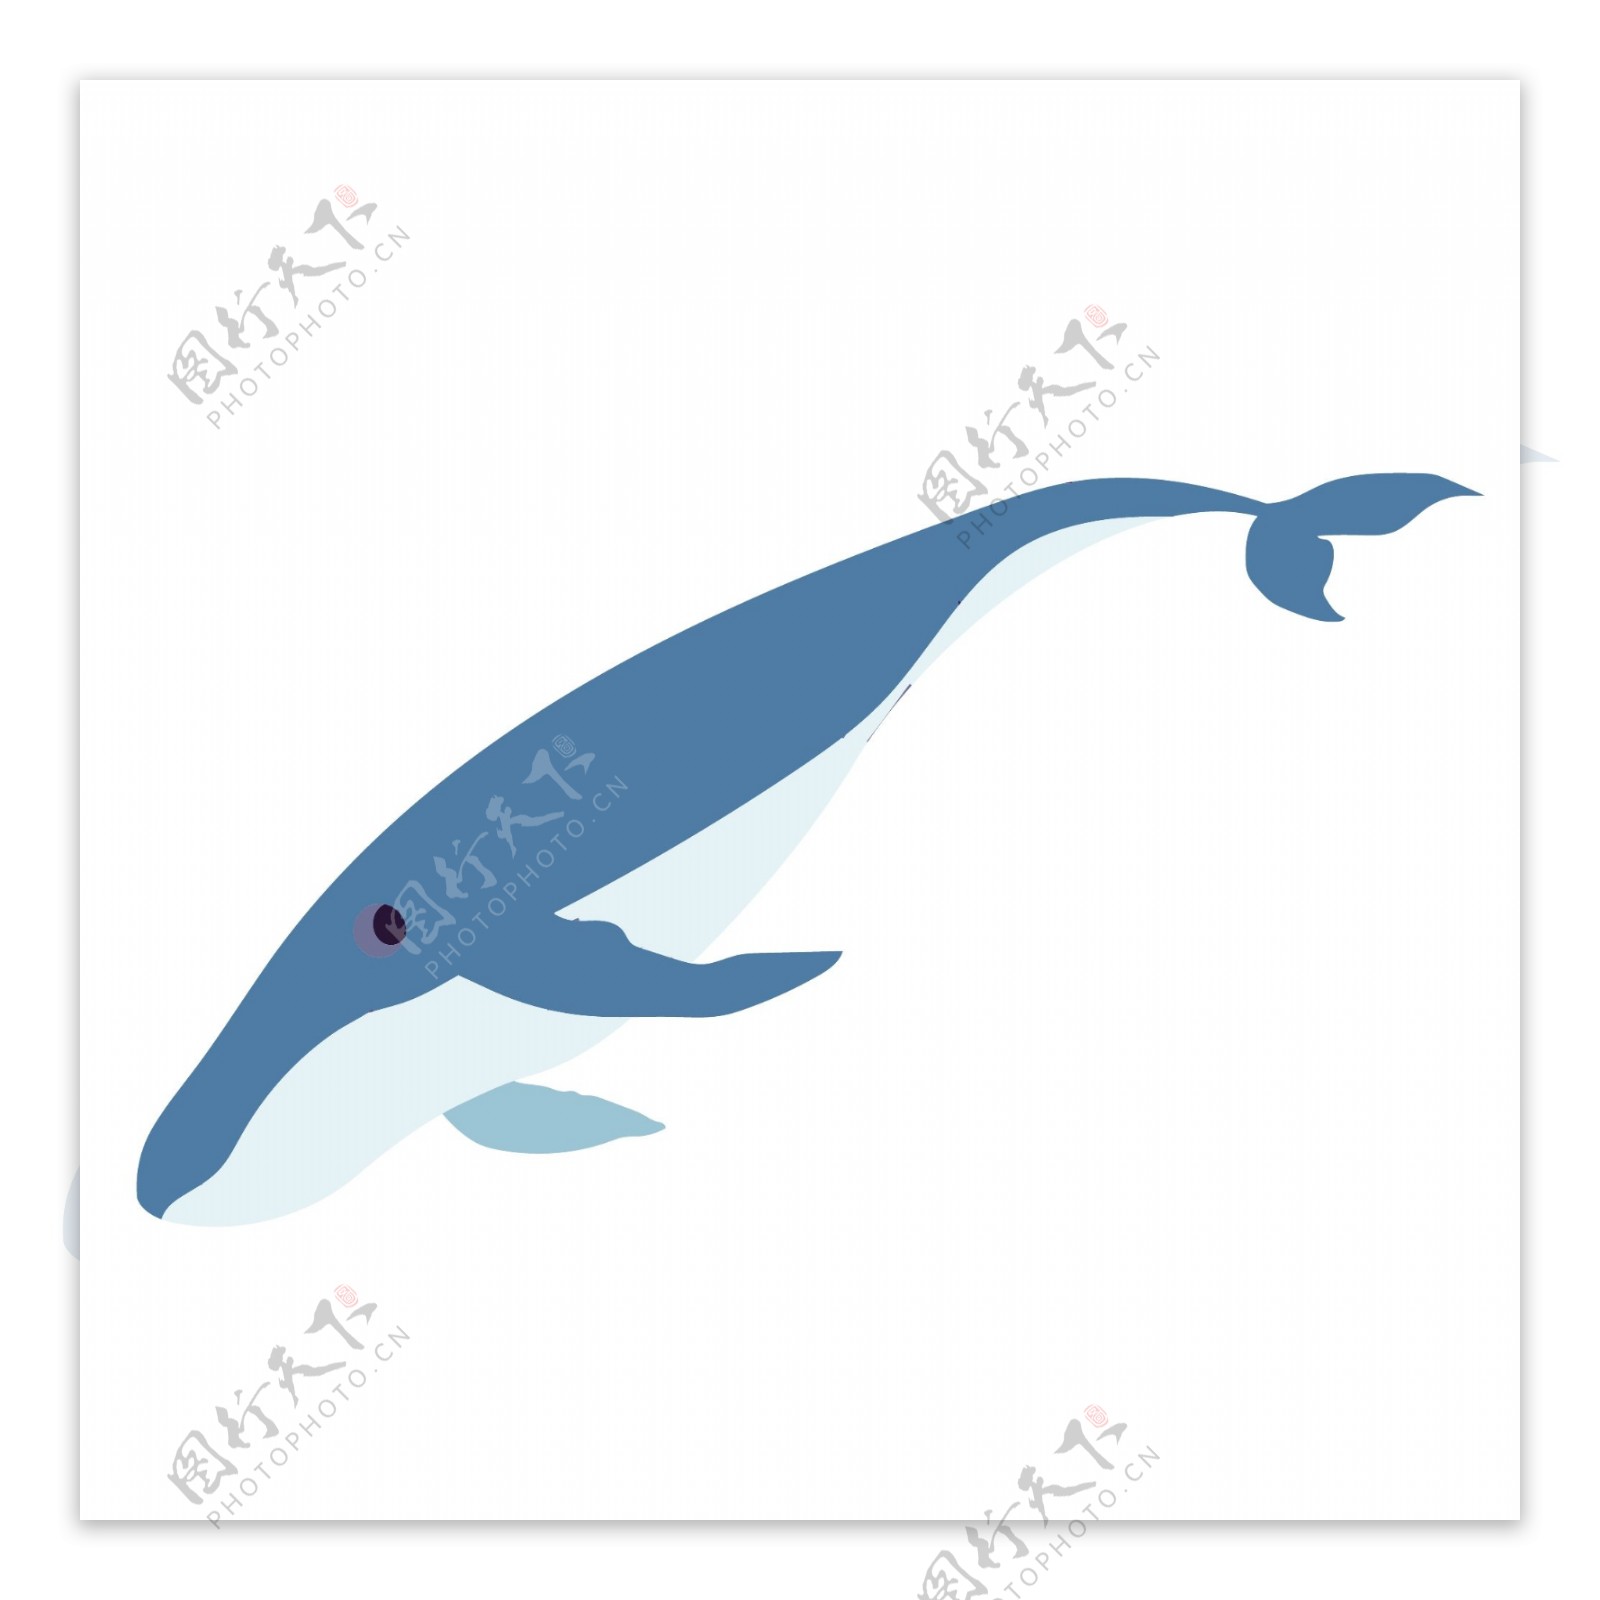 蓝色简约鲸鱼图案